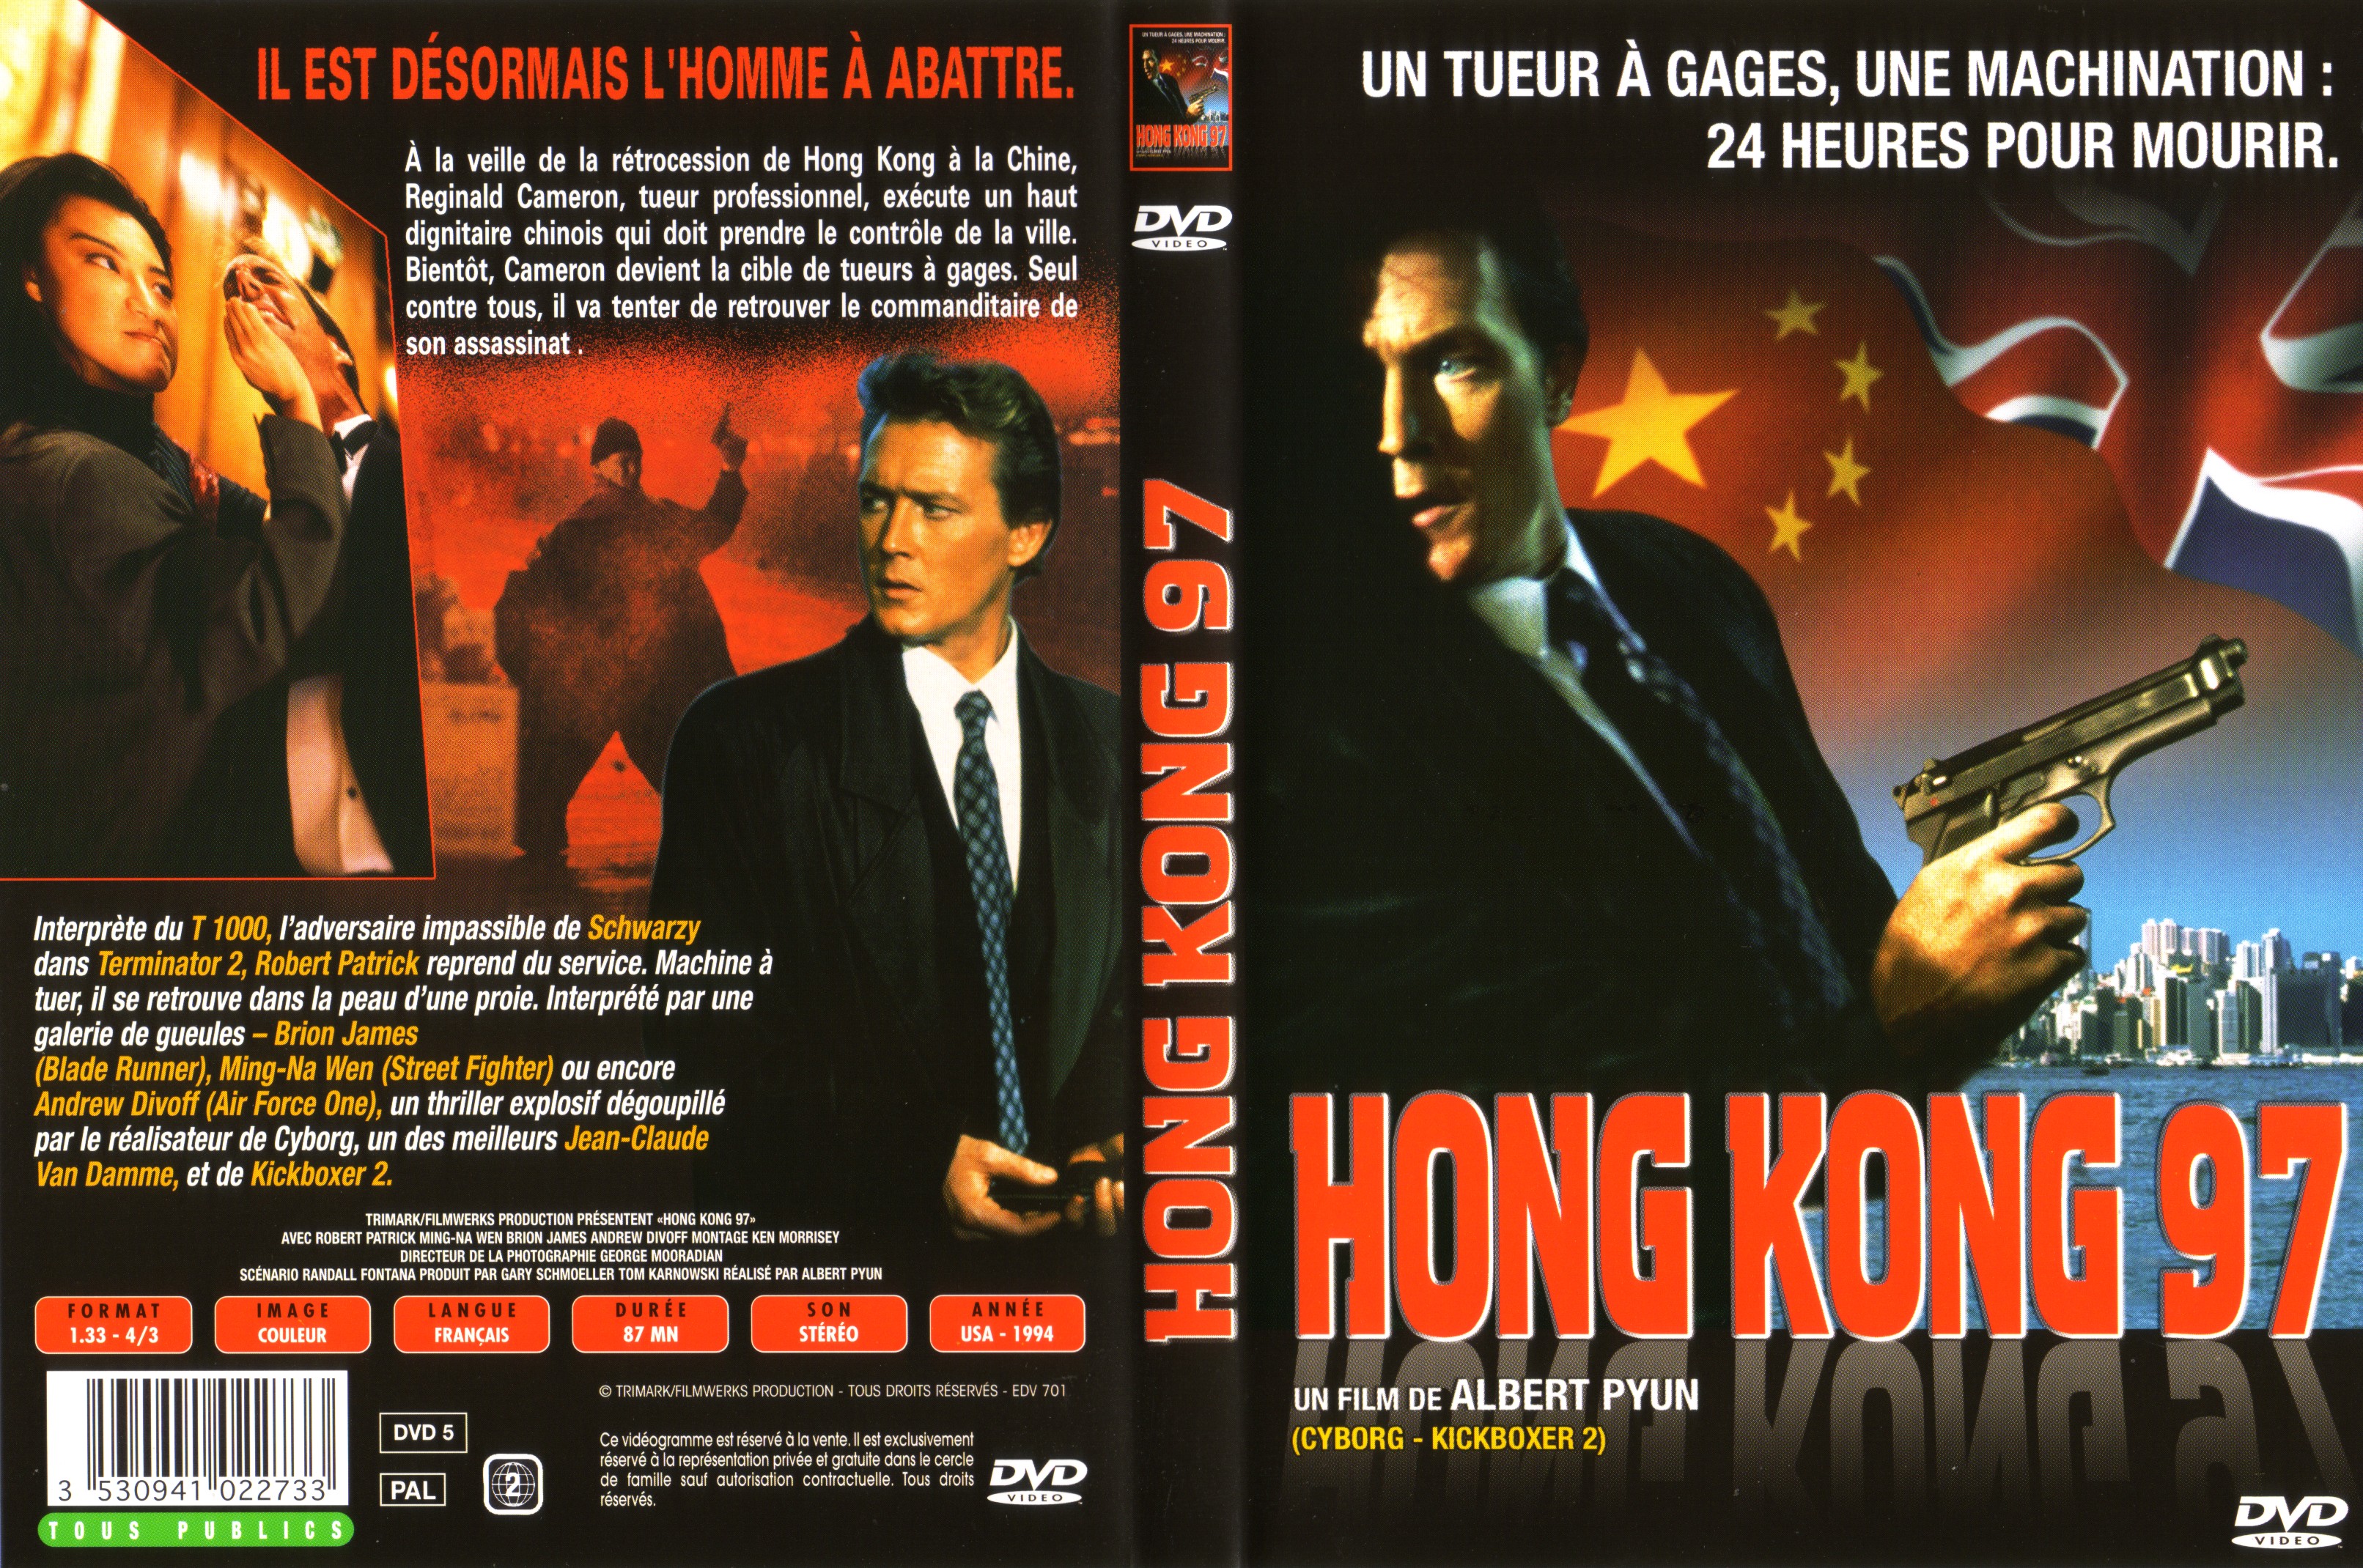 Jaquette DVD Hong Kong 97